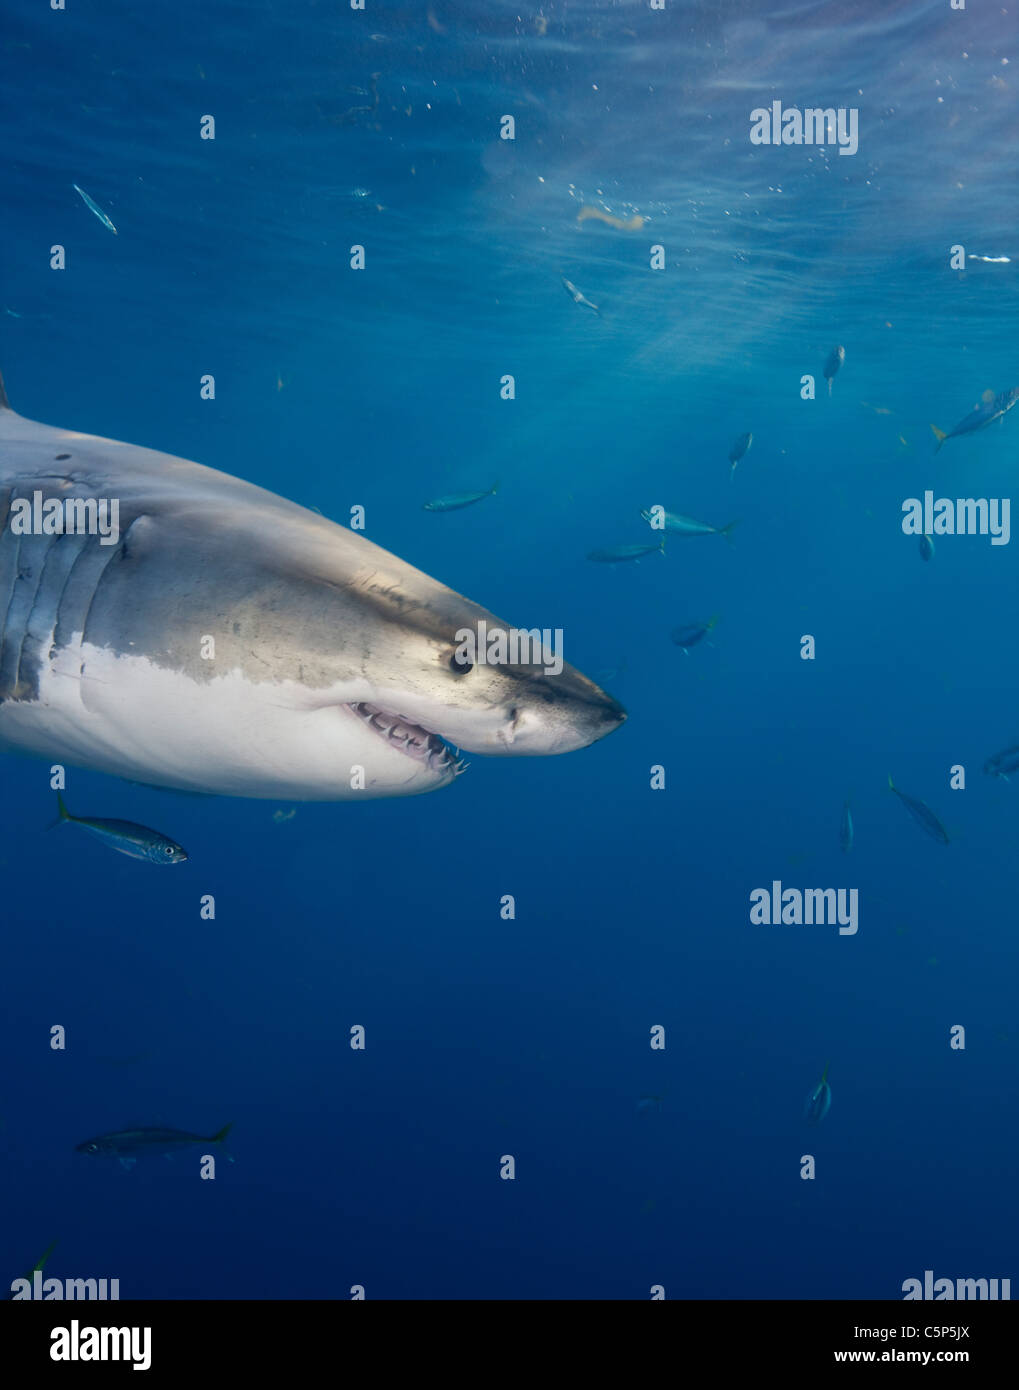 Great White Shark, Mexico Stock Photo